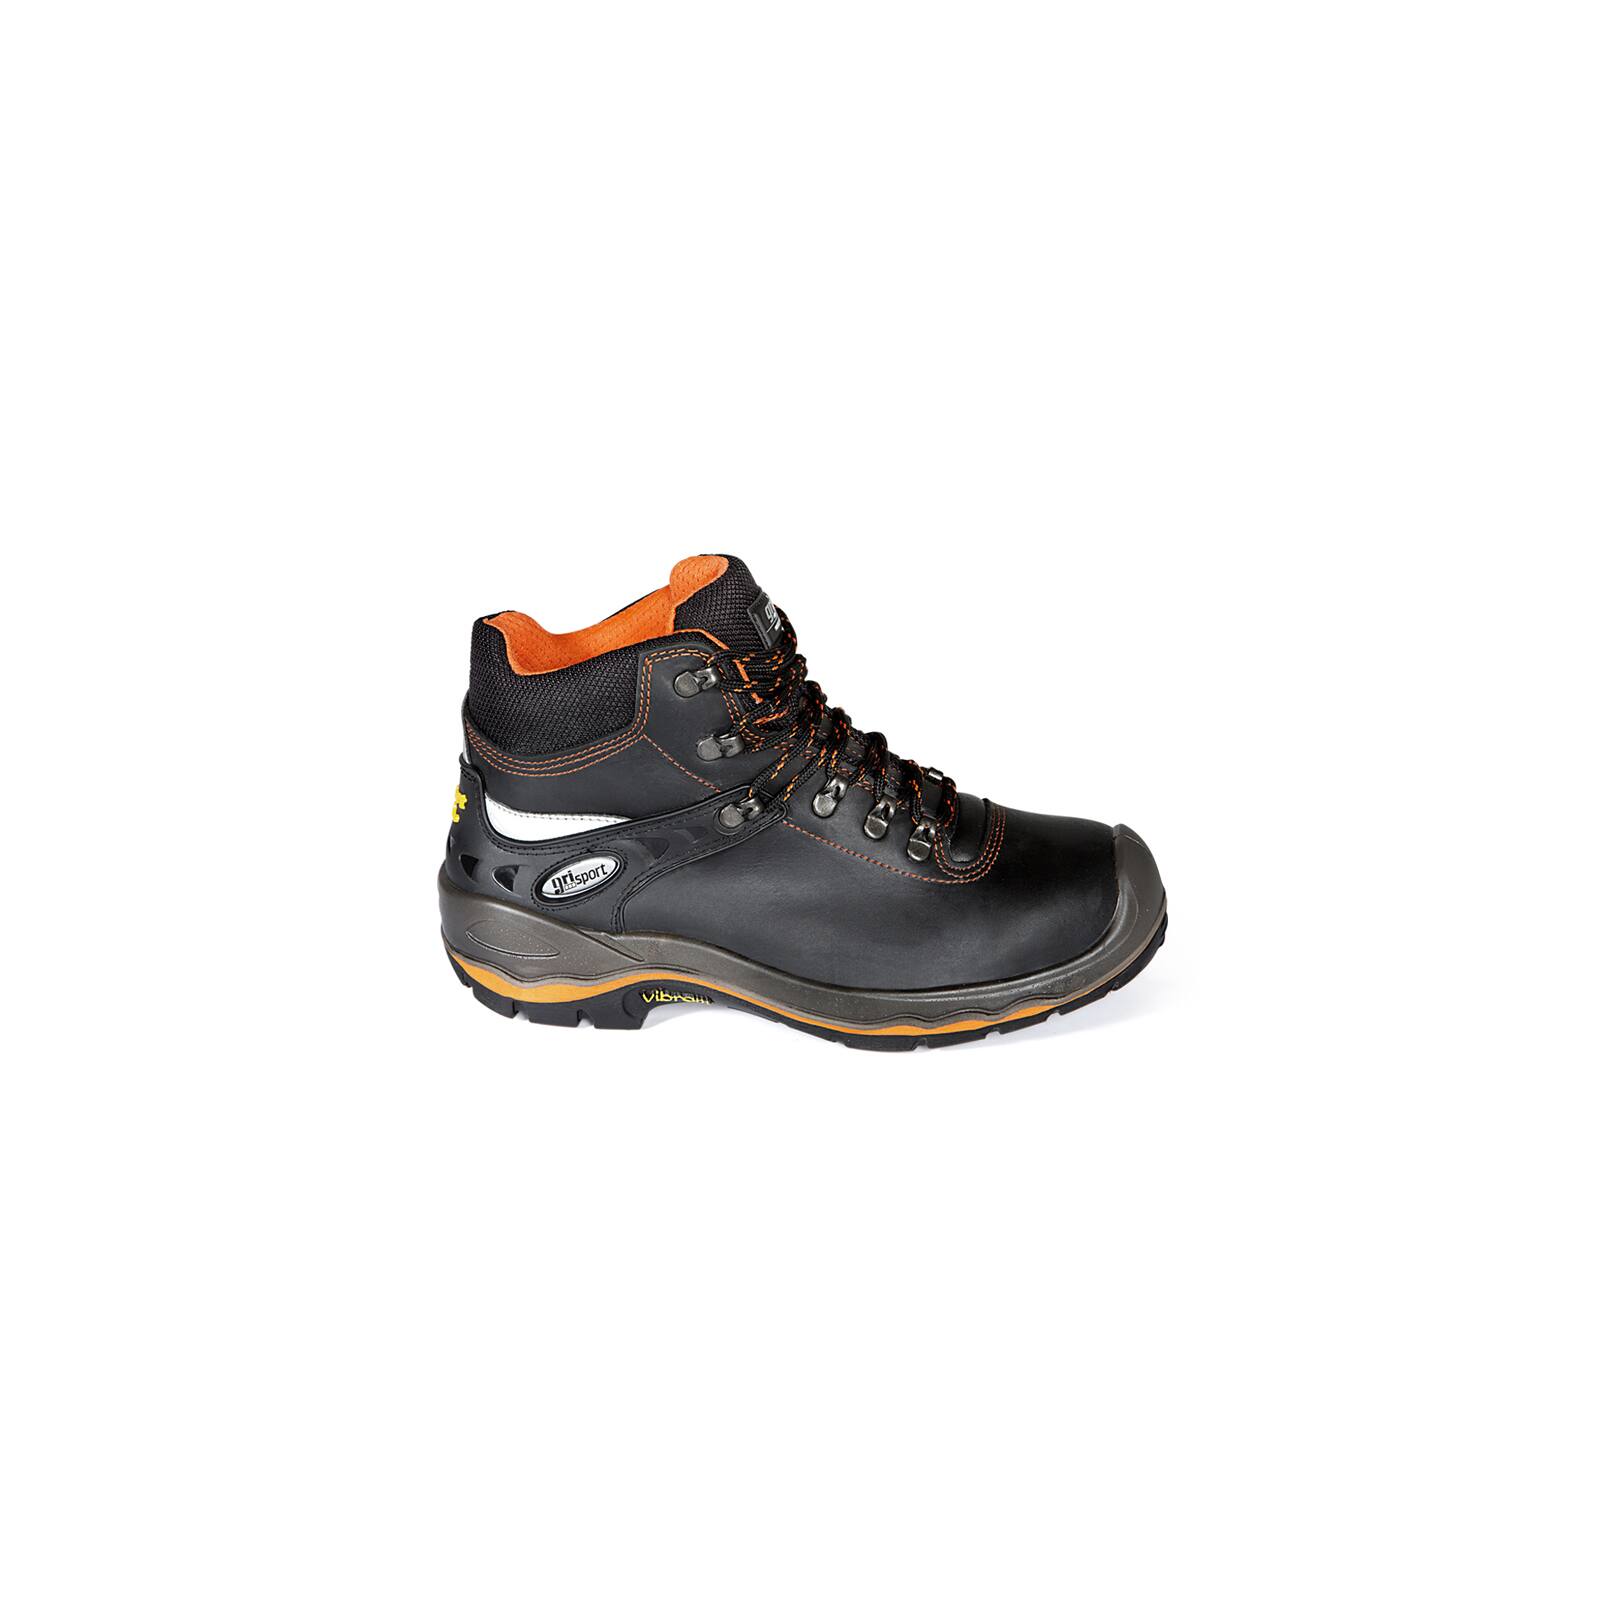 Bulk maximaliseren Vleugels Work- and Safety Shoe S3 black-orange Grisport 72003 VAR 30 - Roadiew,  84,90 €